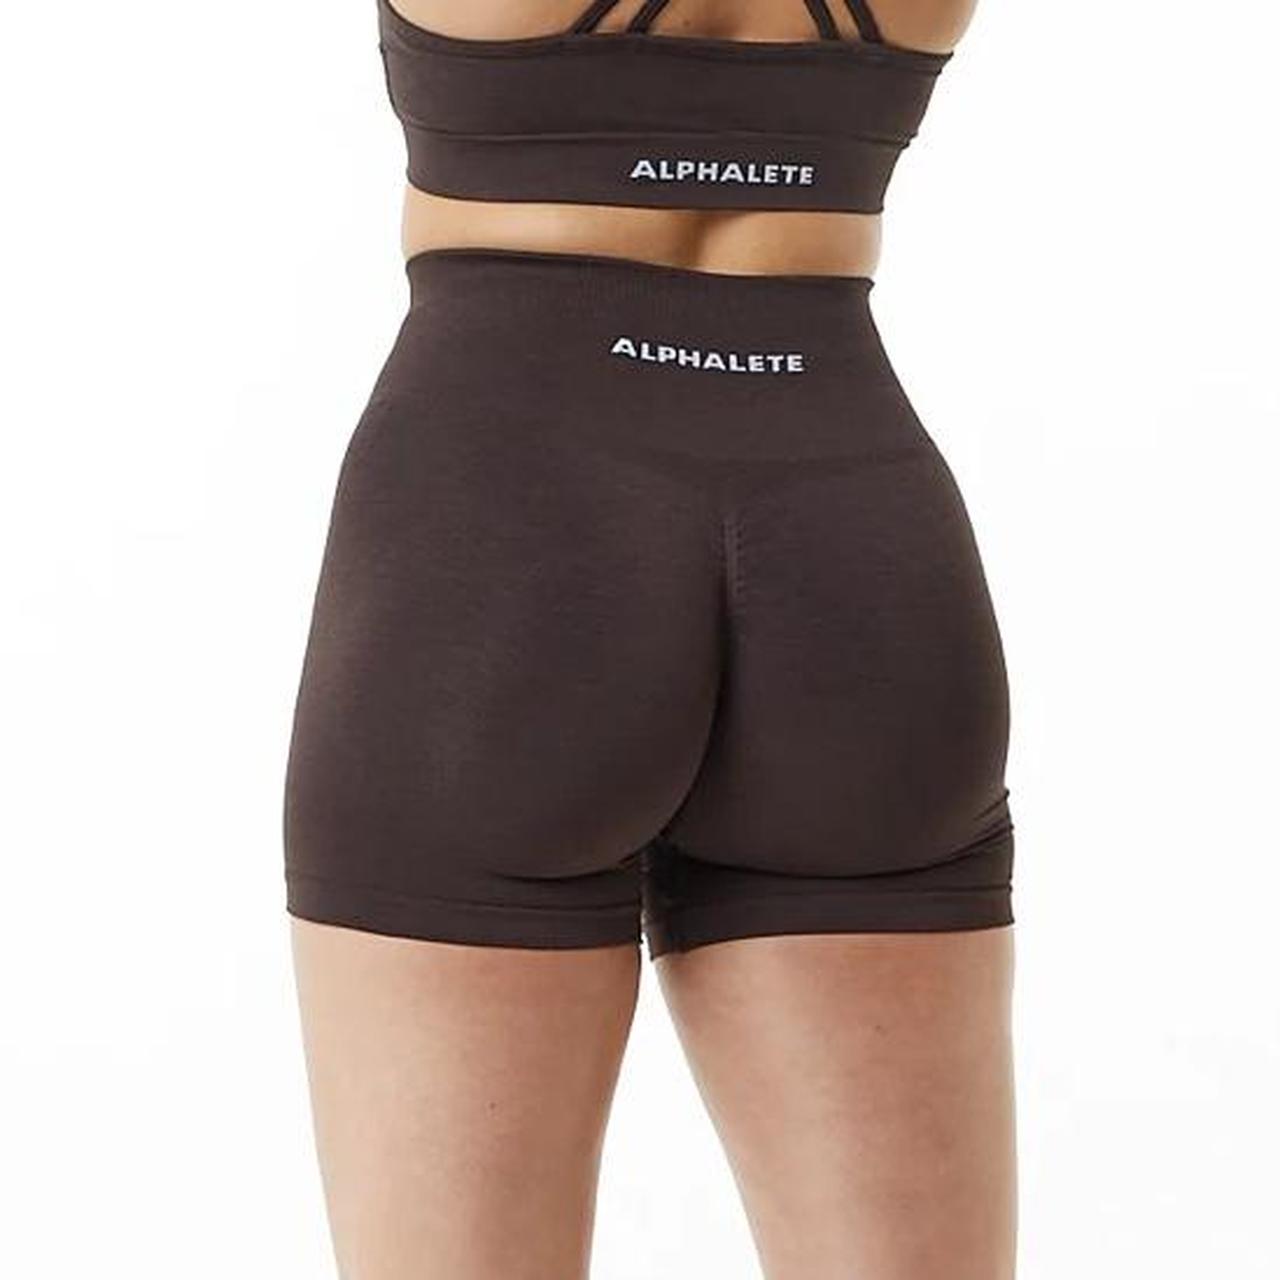 Alphalete Amplify leggings in dark brown / chocolate - Depop